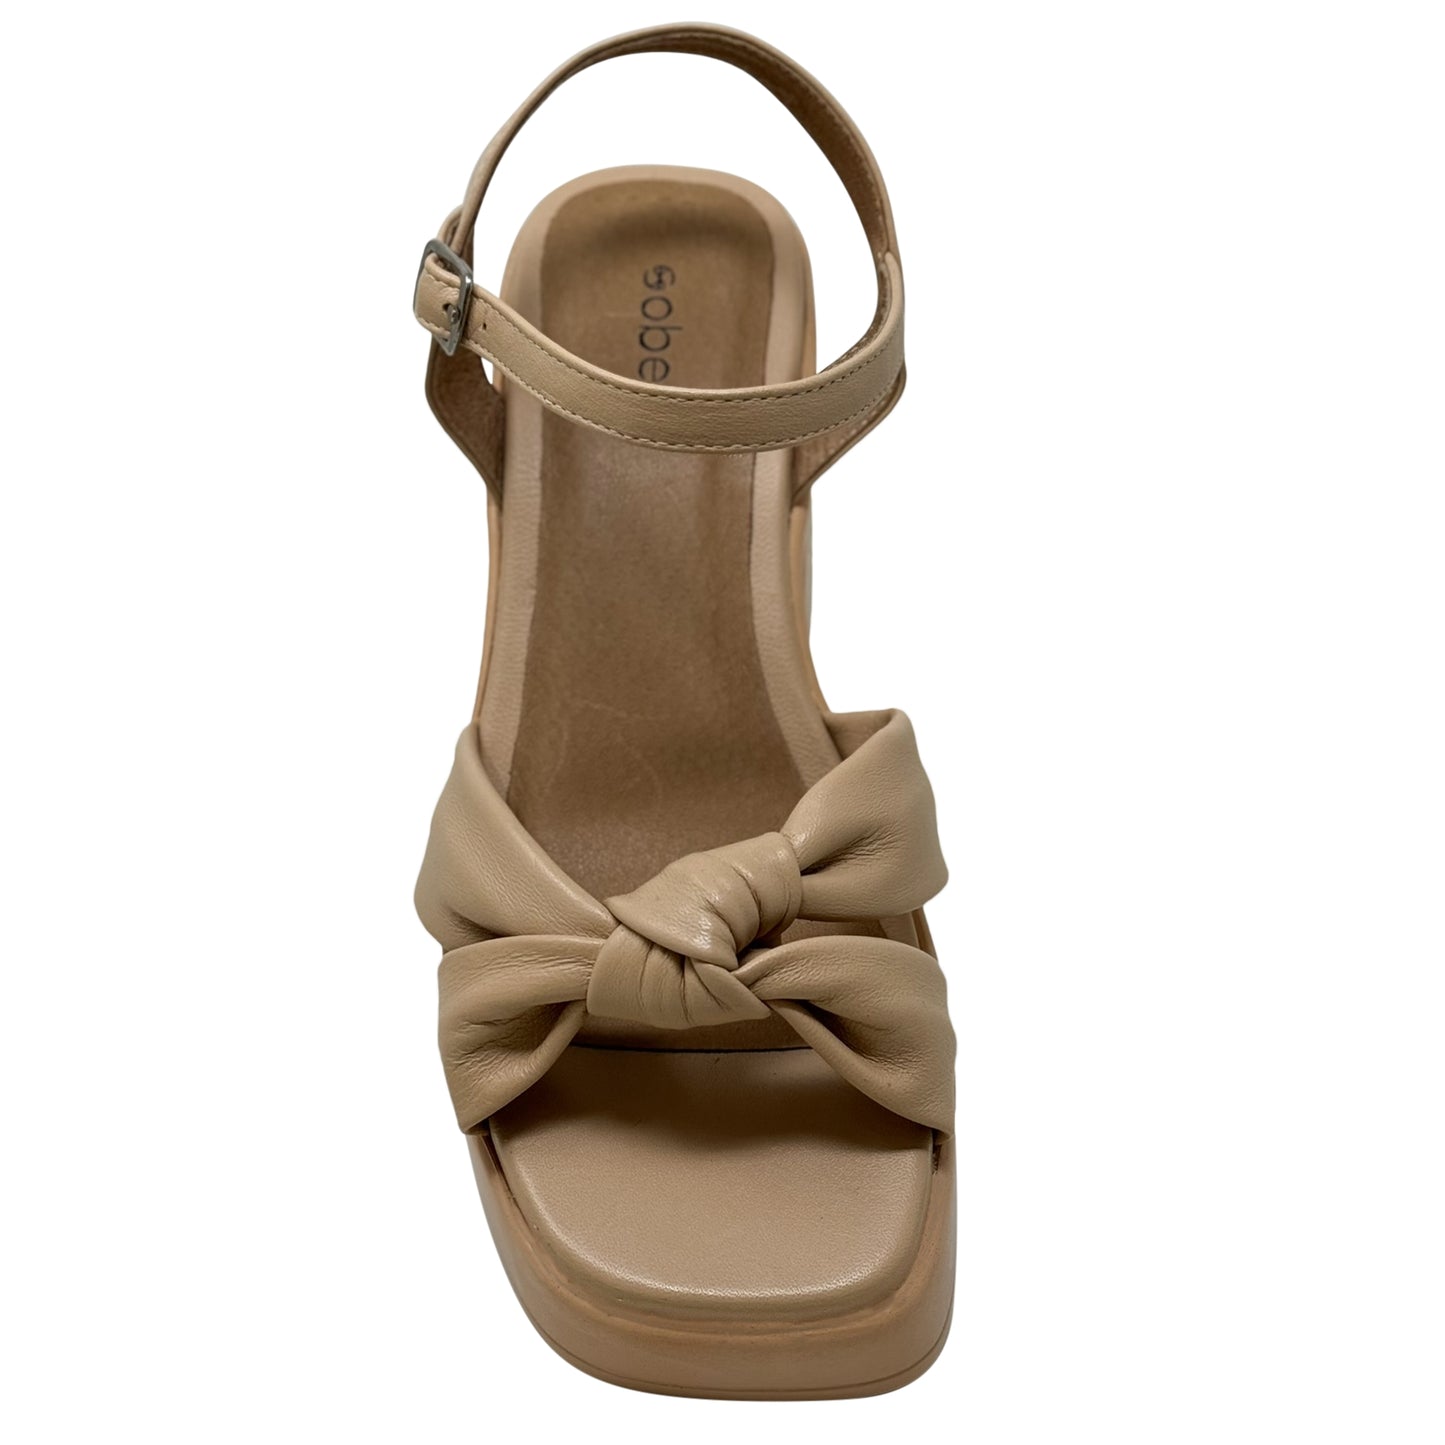 SOBEYO Criss-Cross Bell-Shape Block Heels Ankle Strap Tan Leather